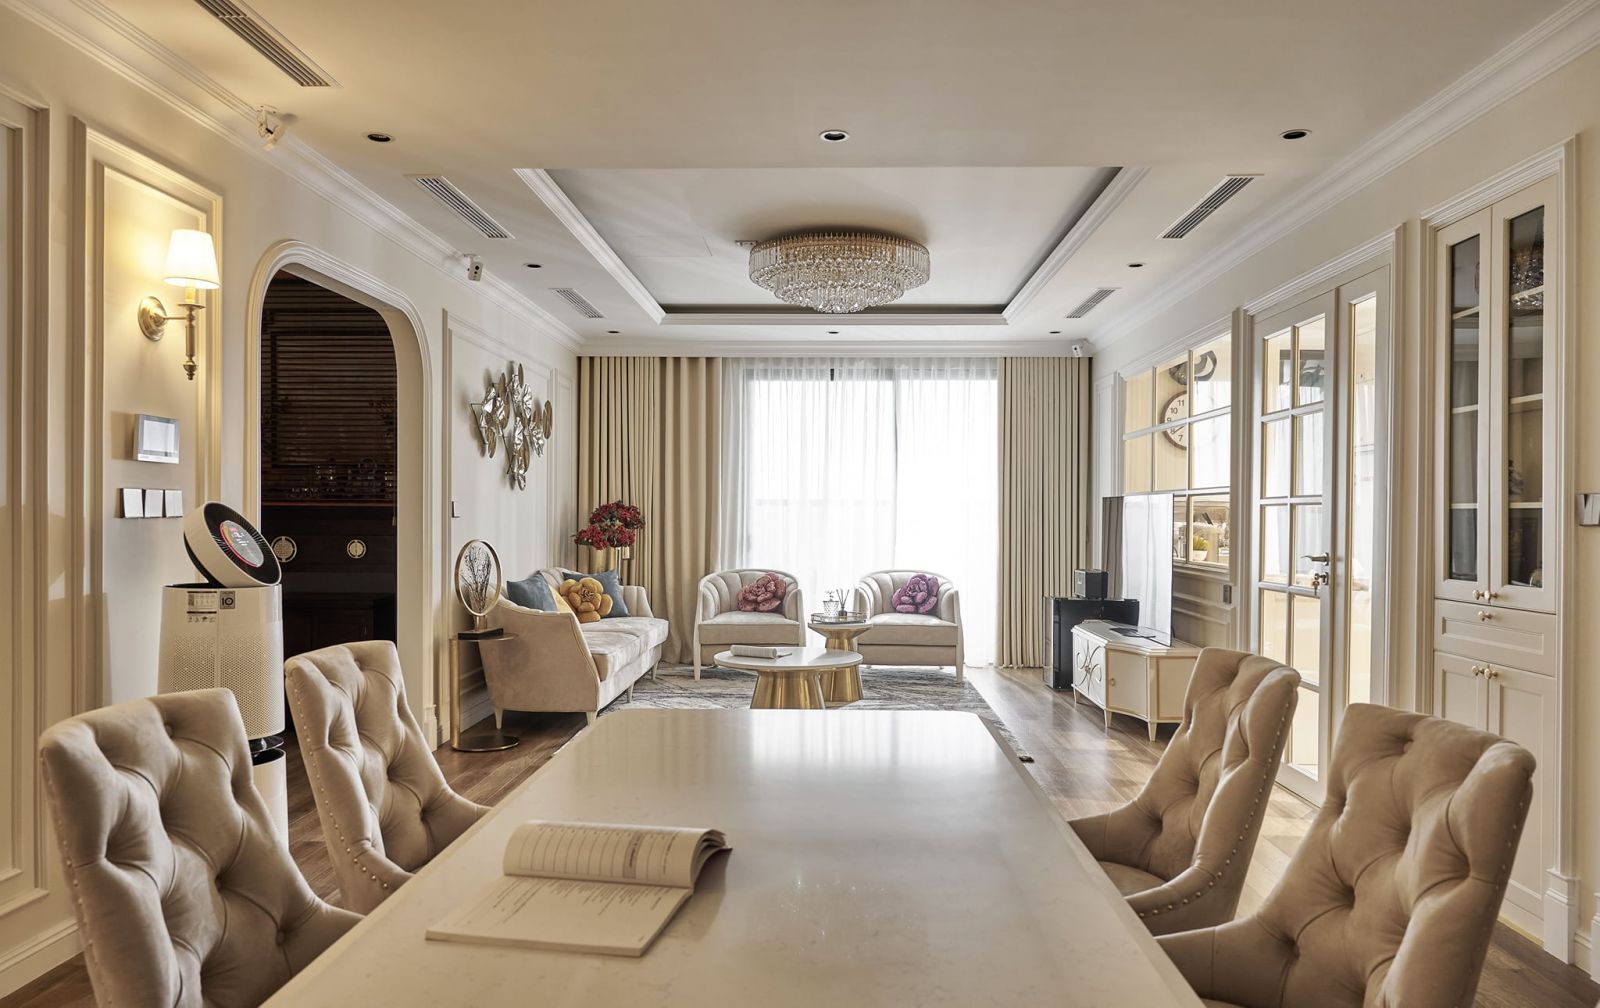 Phòng khách được thiết kế theo phong cách tân cổ điển với tông màu nude, điểm nhấn là chiếc đèn chùm cùng bộ ghế sofa lớn.